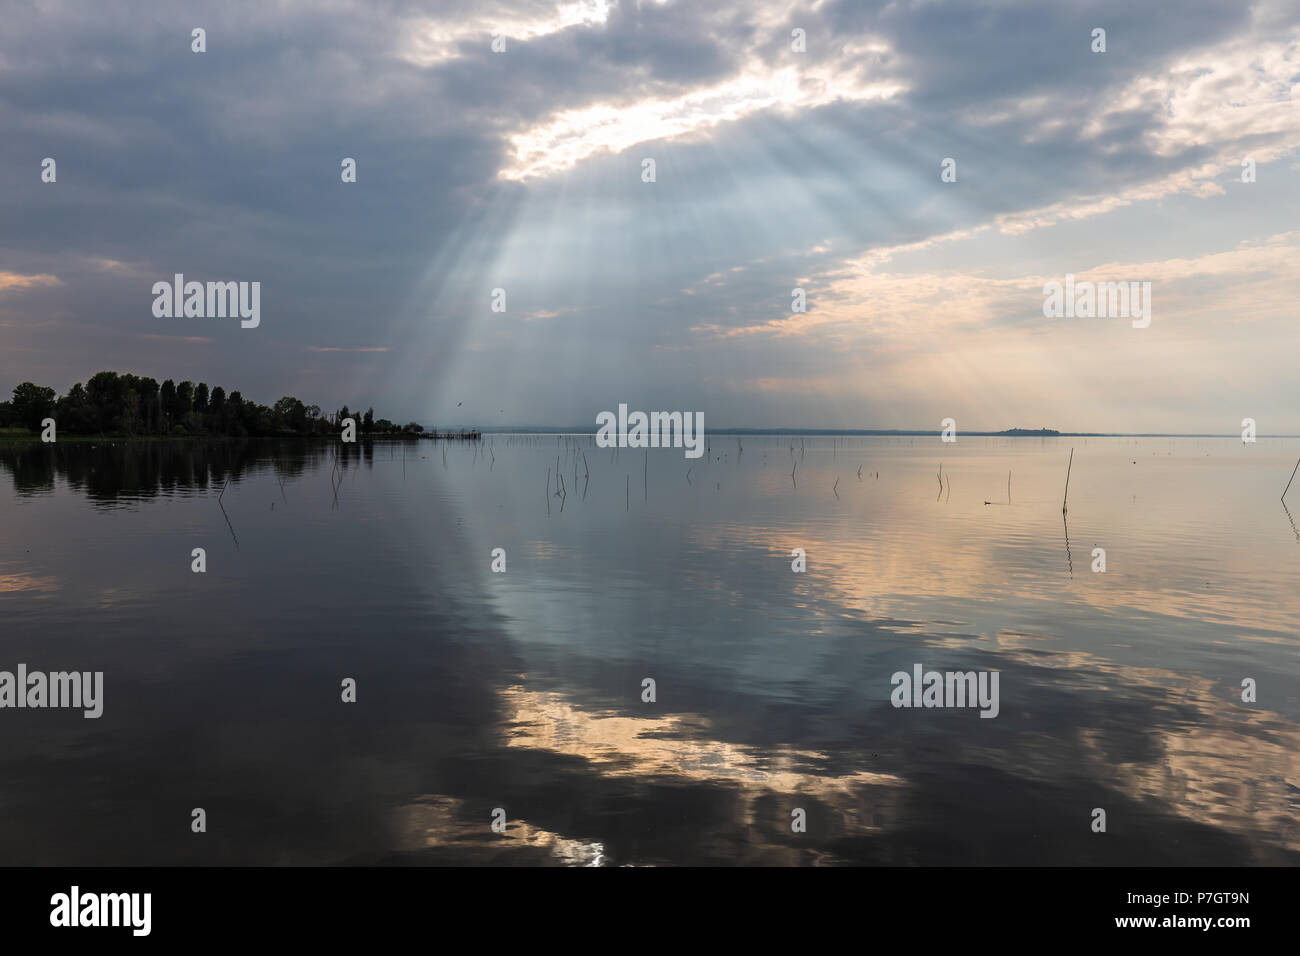 Perfekt symmetrisch und einen spektakulären Blick auf den See, mit den Wolken, der Himmel und die Sonnenstrahlen auf dem Wasser widerspiegeln Stockfoto